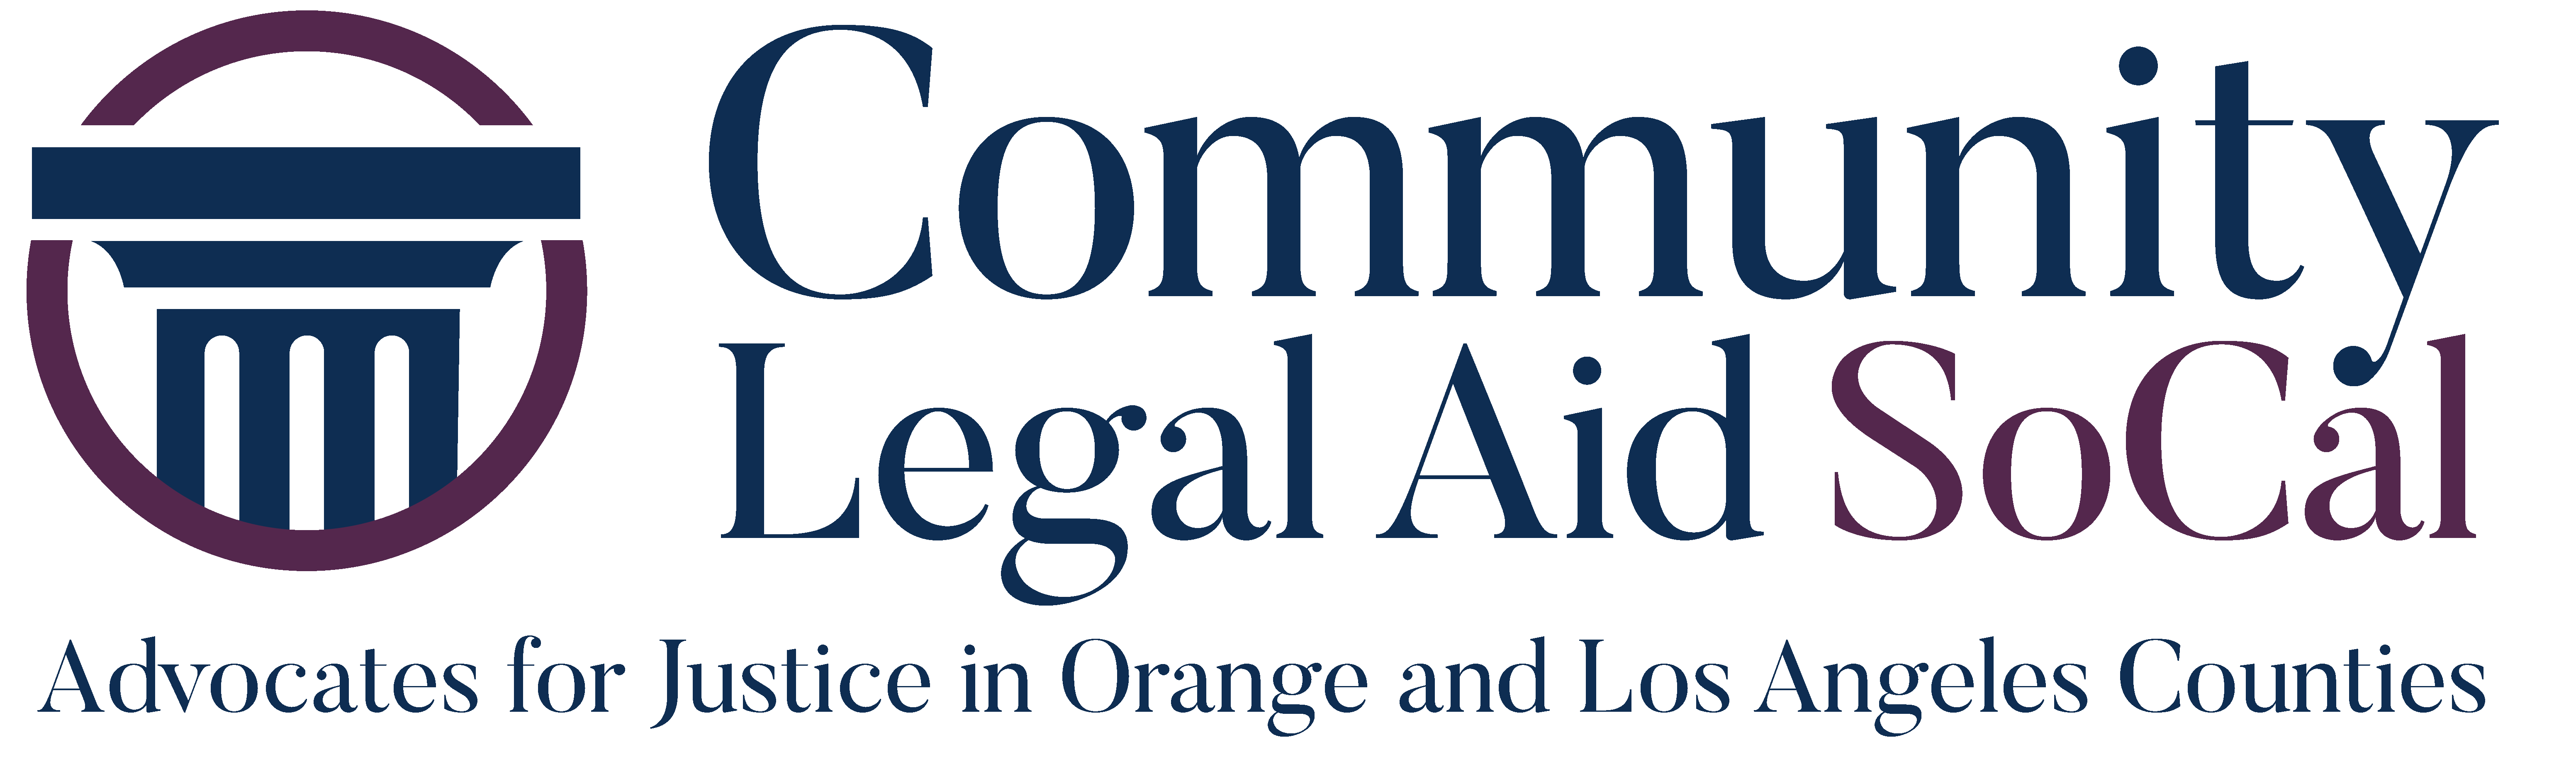 SoCal Logo - Community Legal Aid SoCal. Community Legal Aid